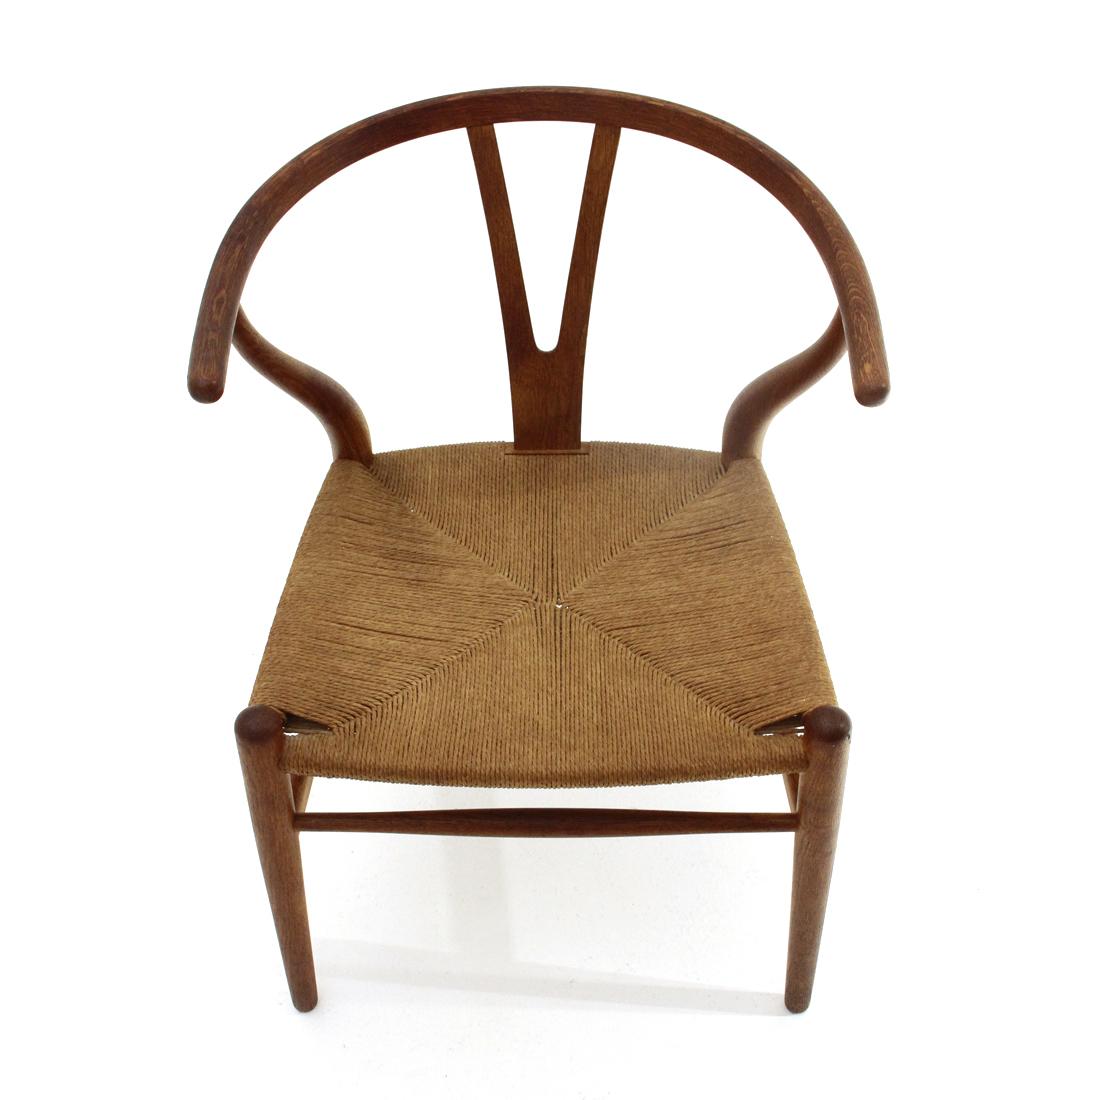 Straw ‘Wishbone’ Chair in Durmast by Hans Wegner for Carl Hansen & Søn, 1960s